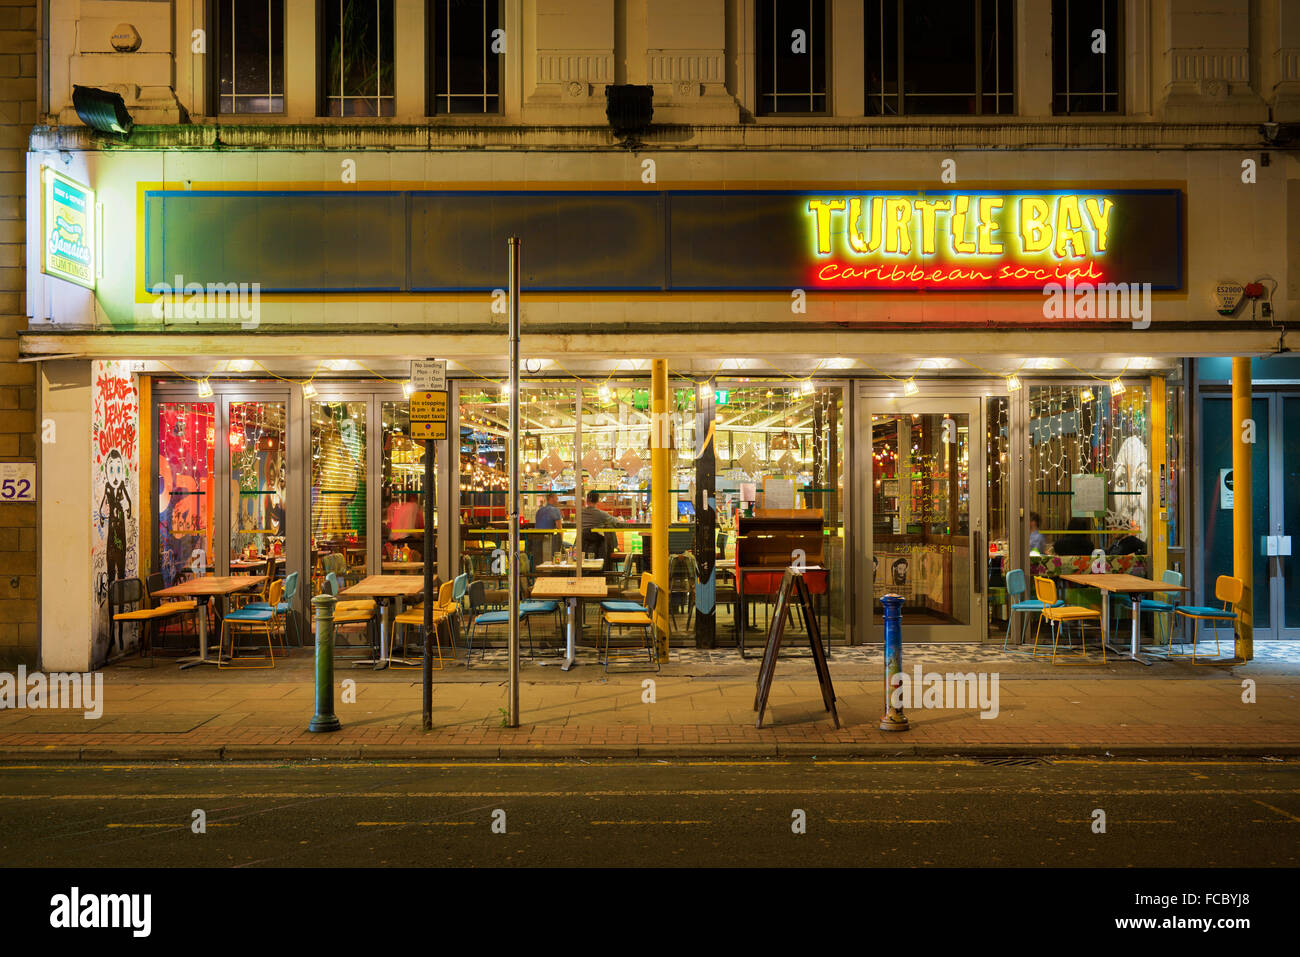 Turtle Bay Karibik Themenrestaurant am Oldham Street im Stadtzentrum von Manchester gelegen. Stockfoto